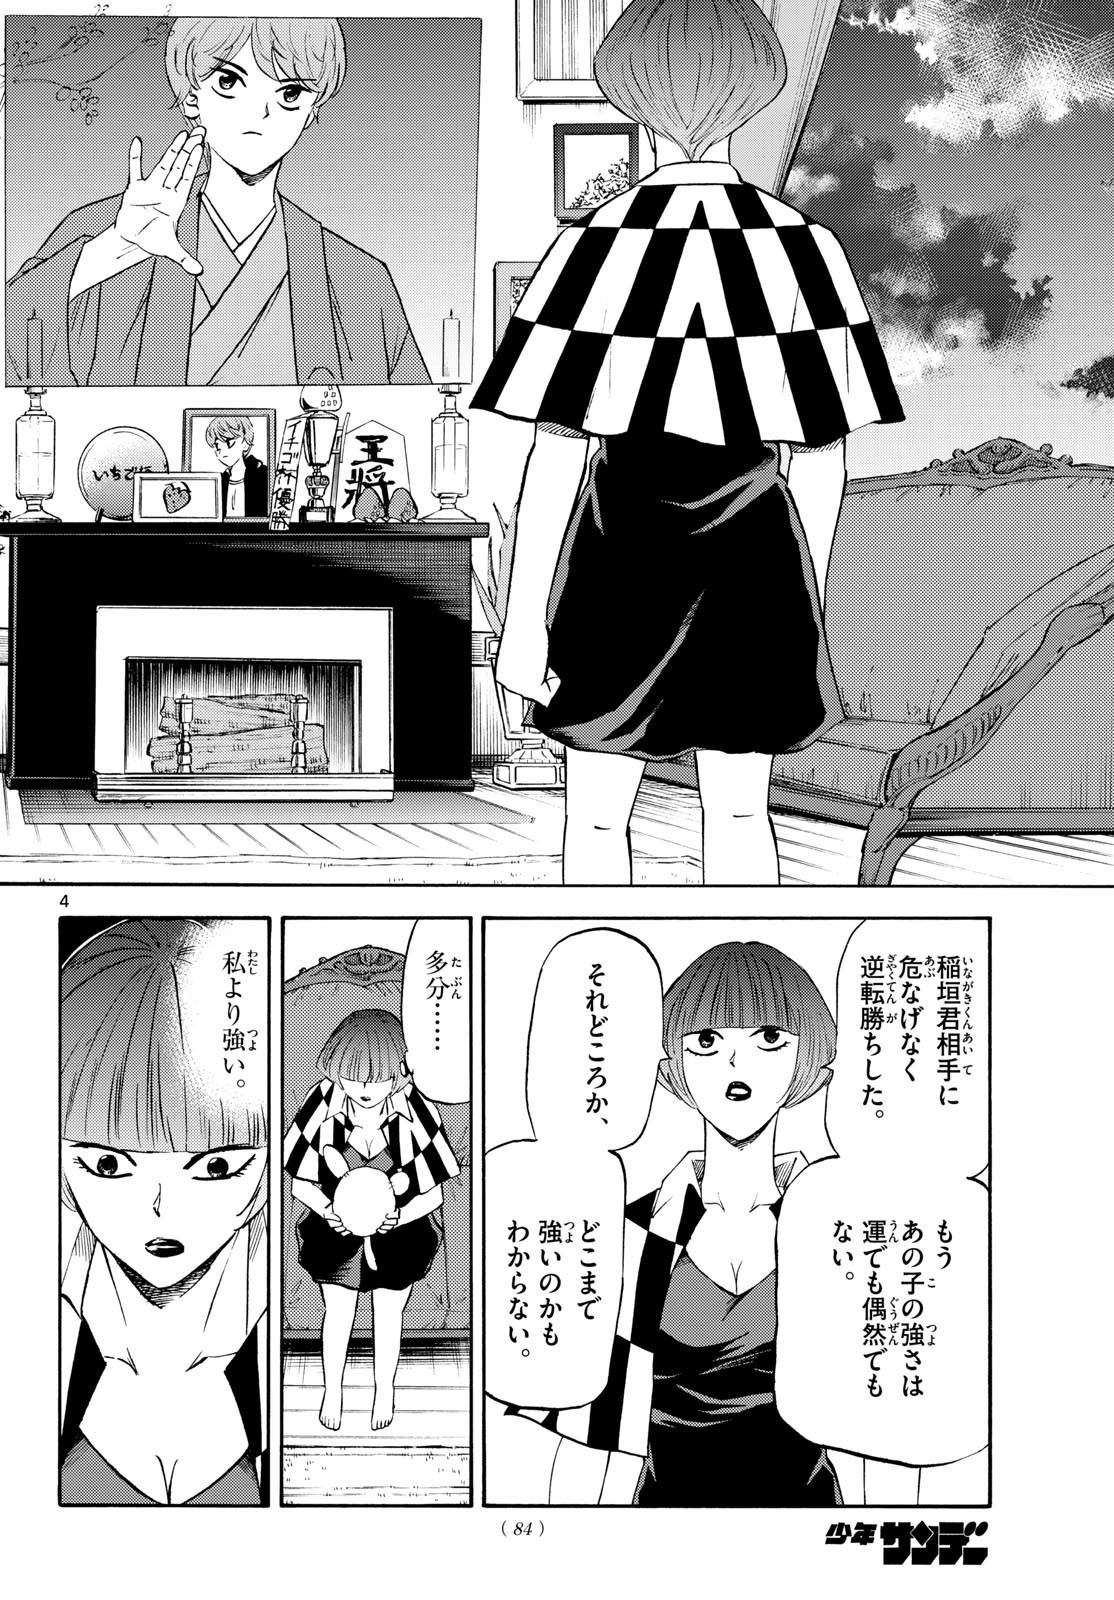 Ryu-to-Ichigo - Chapter 199 - Page 4